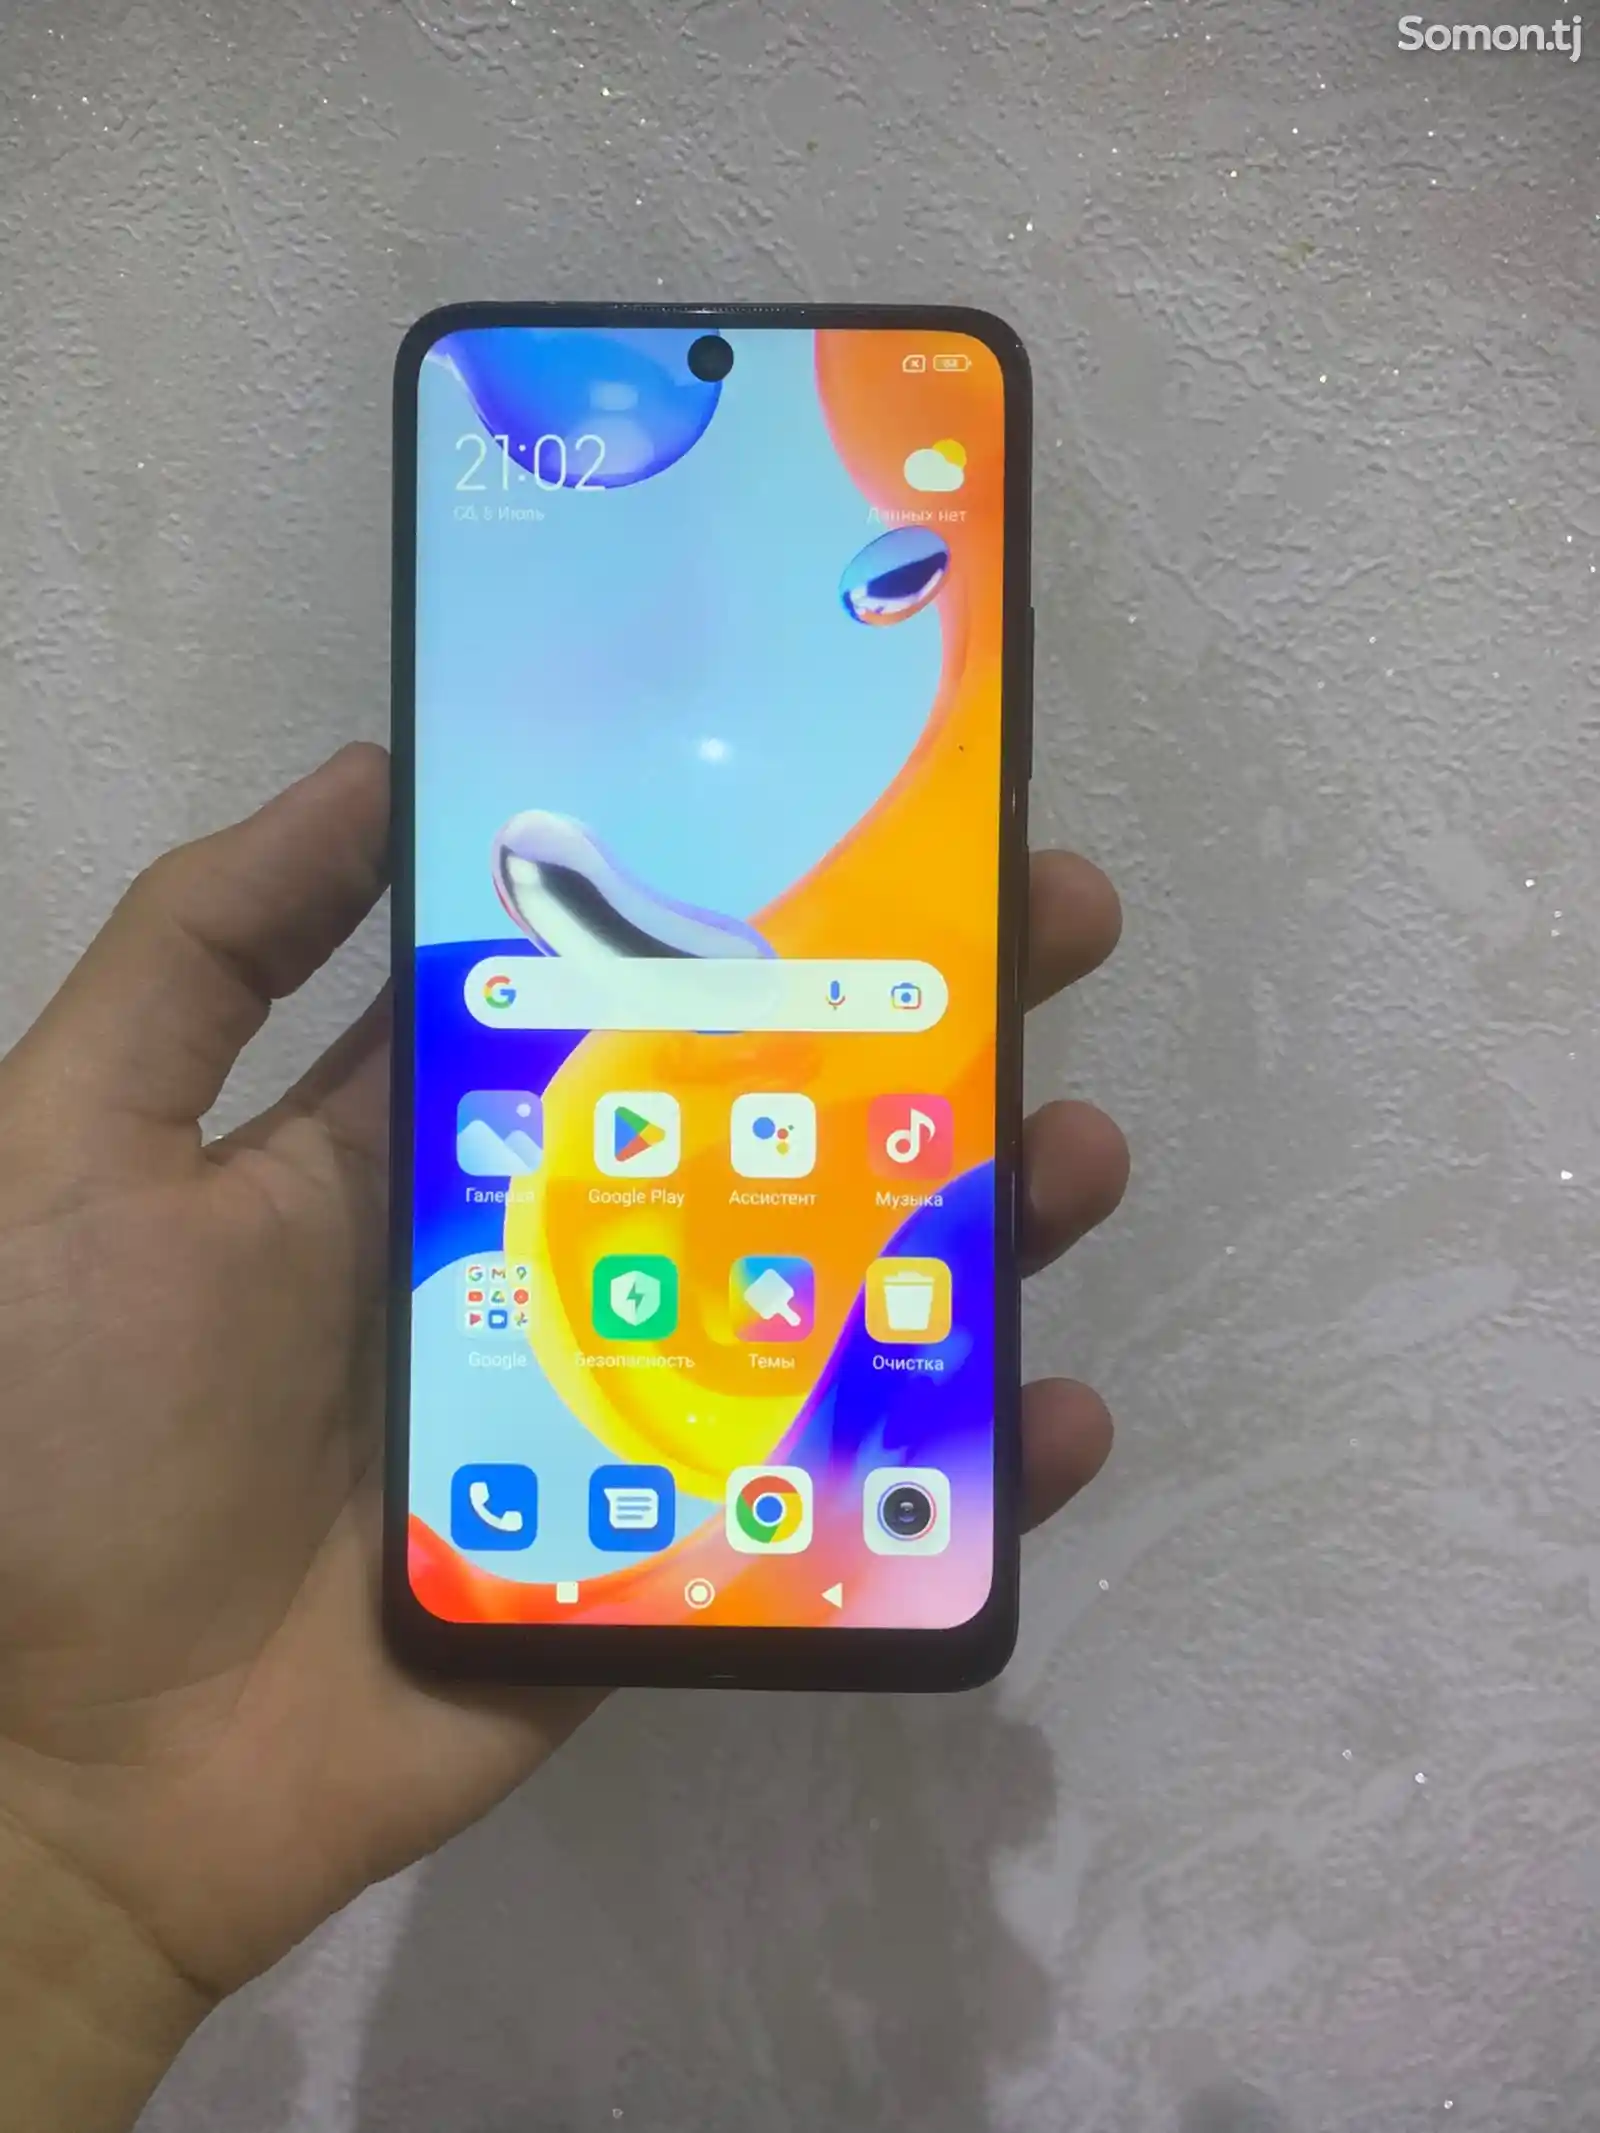 Xiaomi Redmi note 11 pro-2